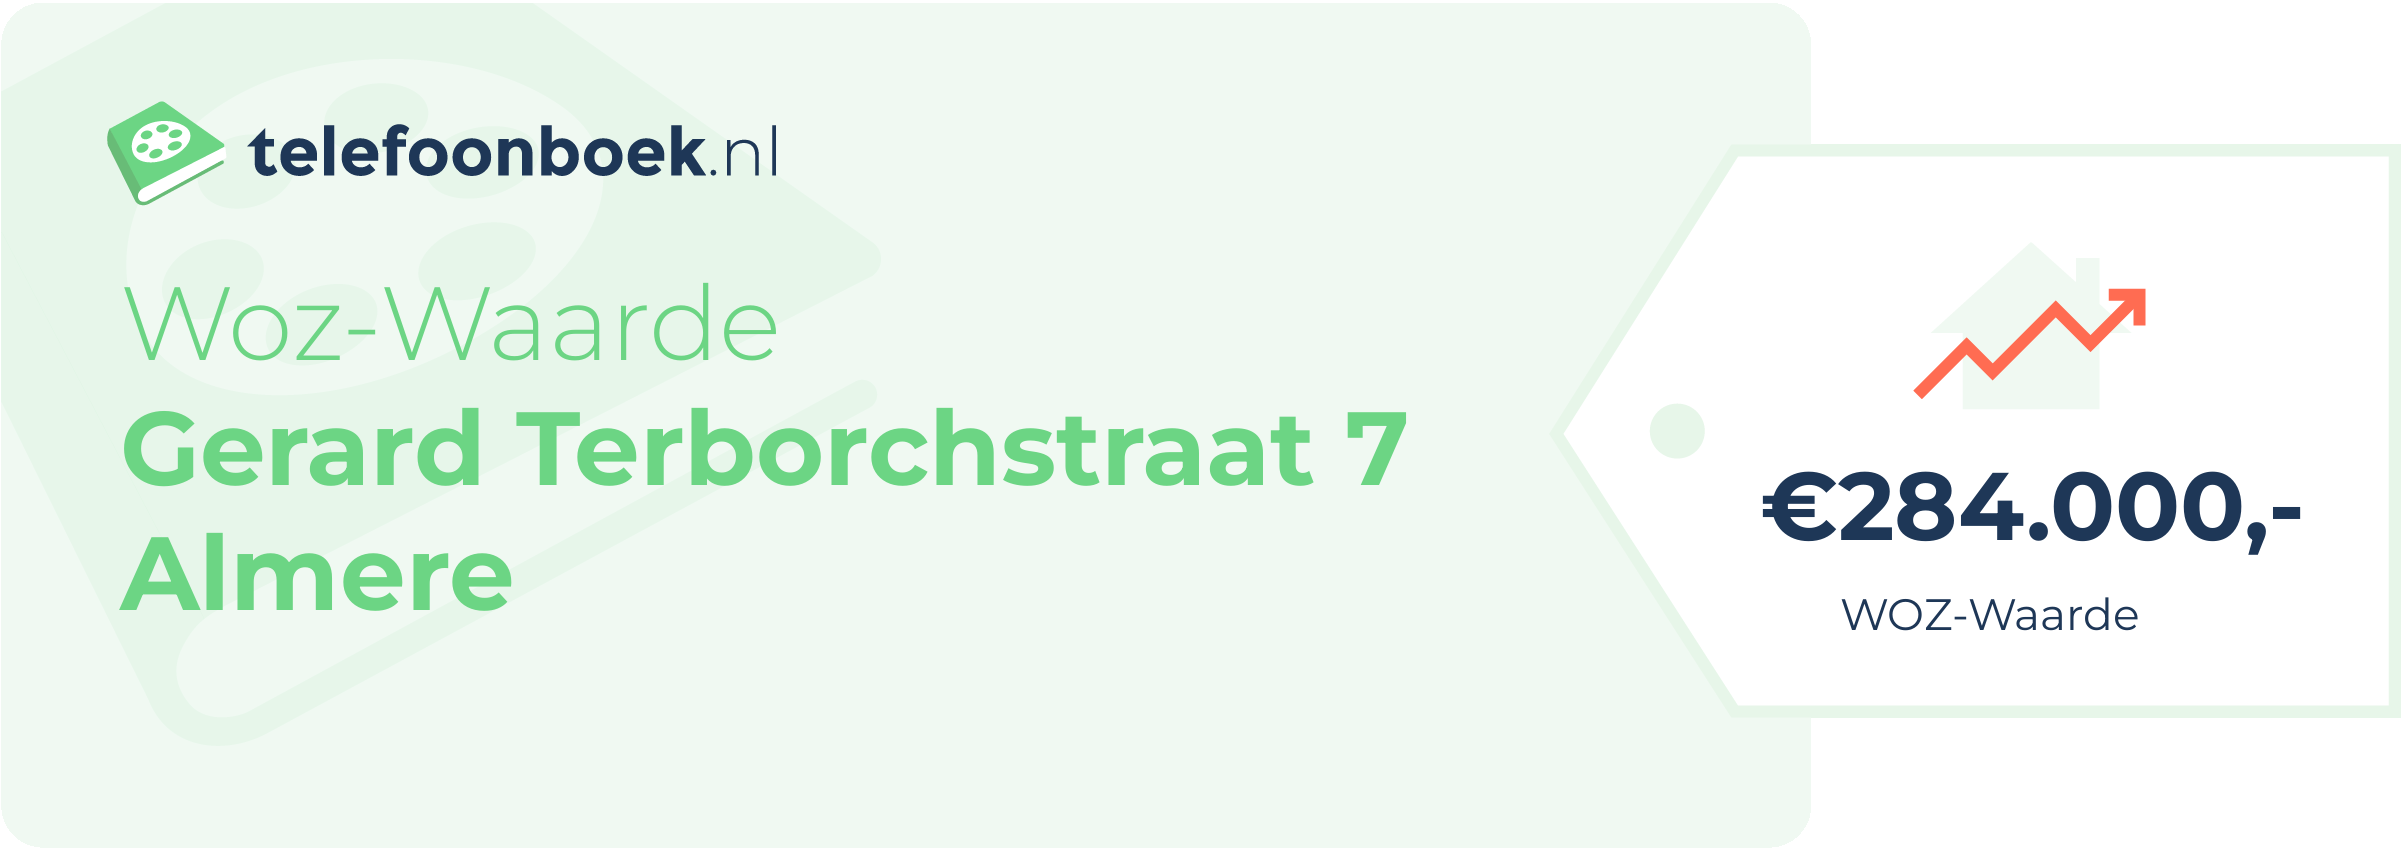 WOZ-waarde Gerard Terborchstraat 7 Almere